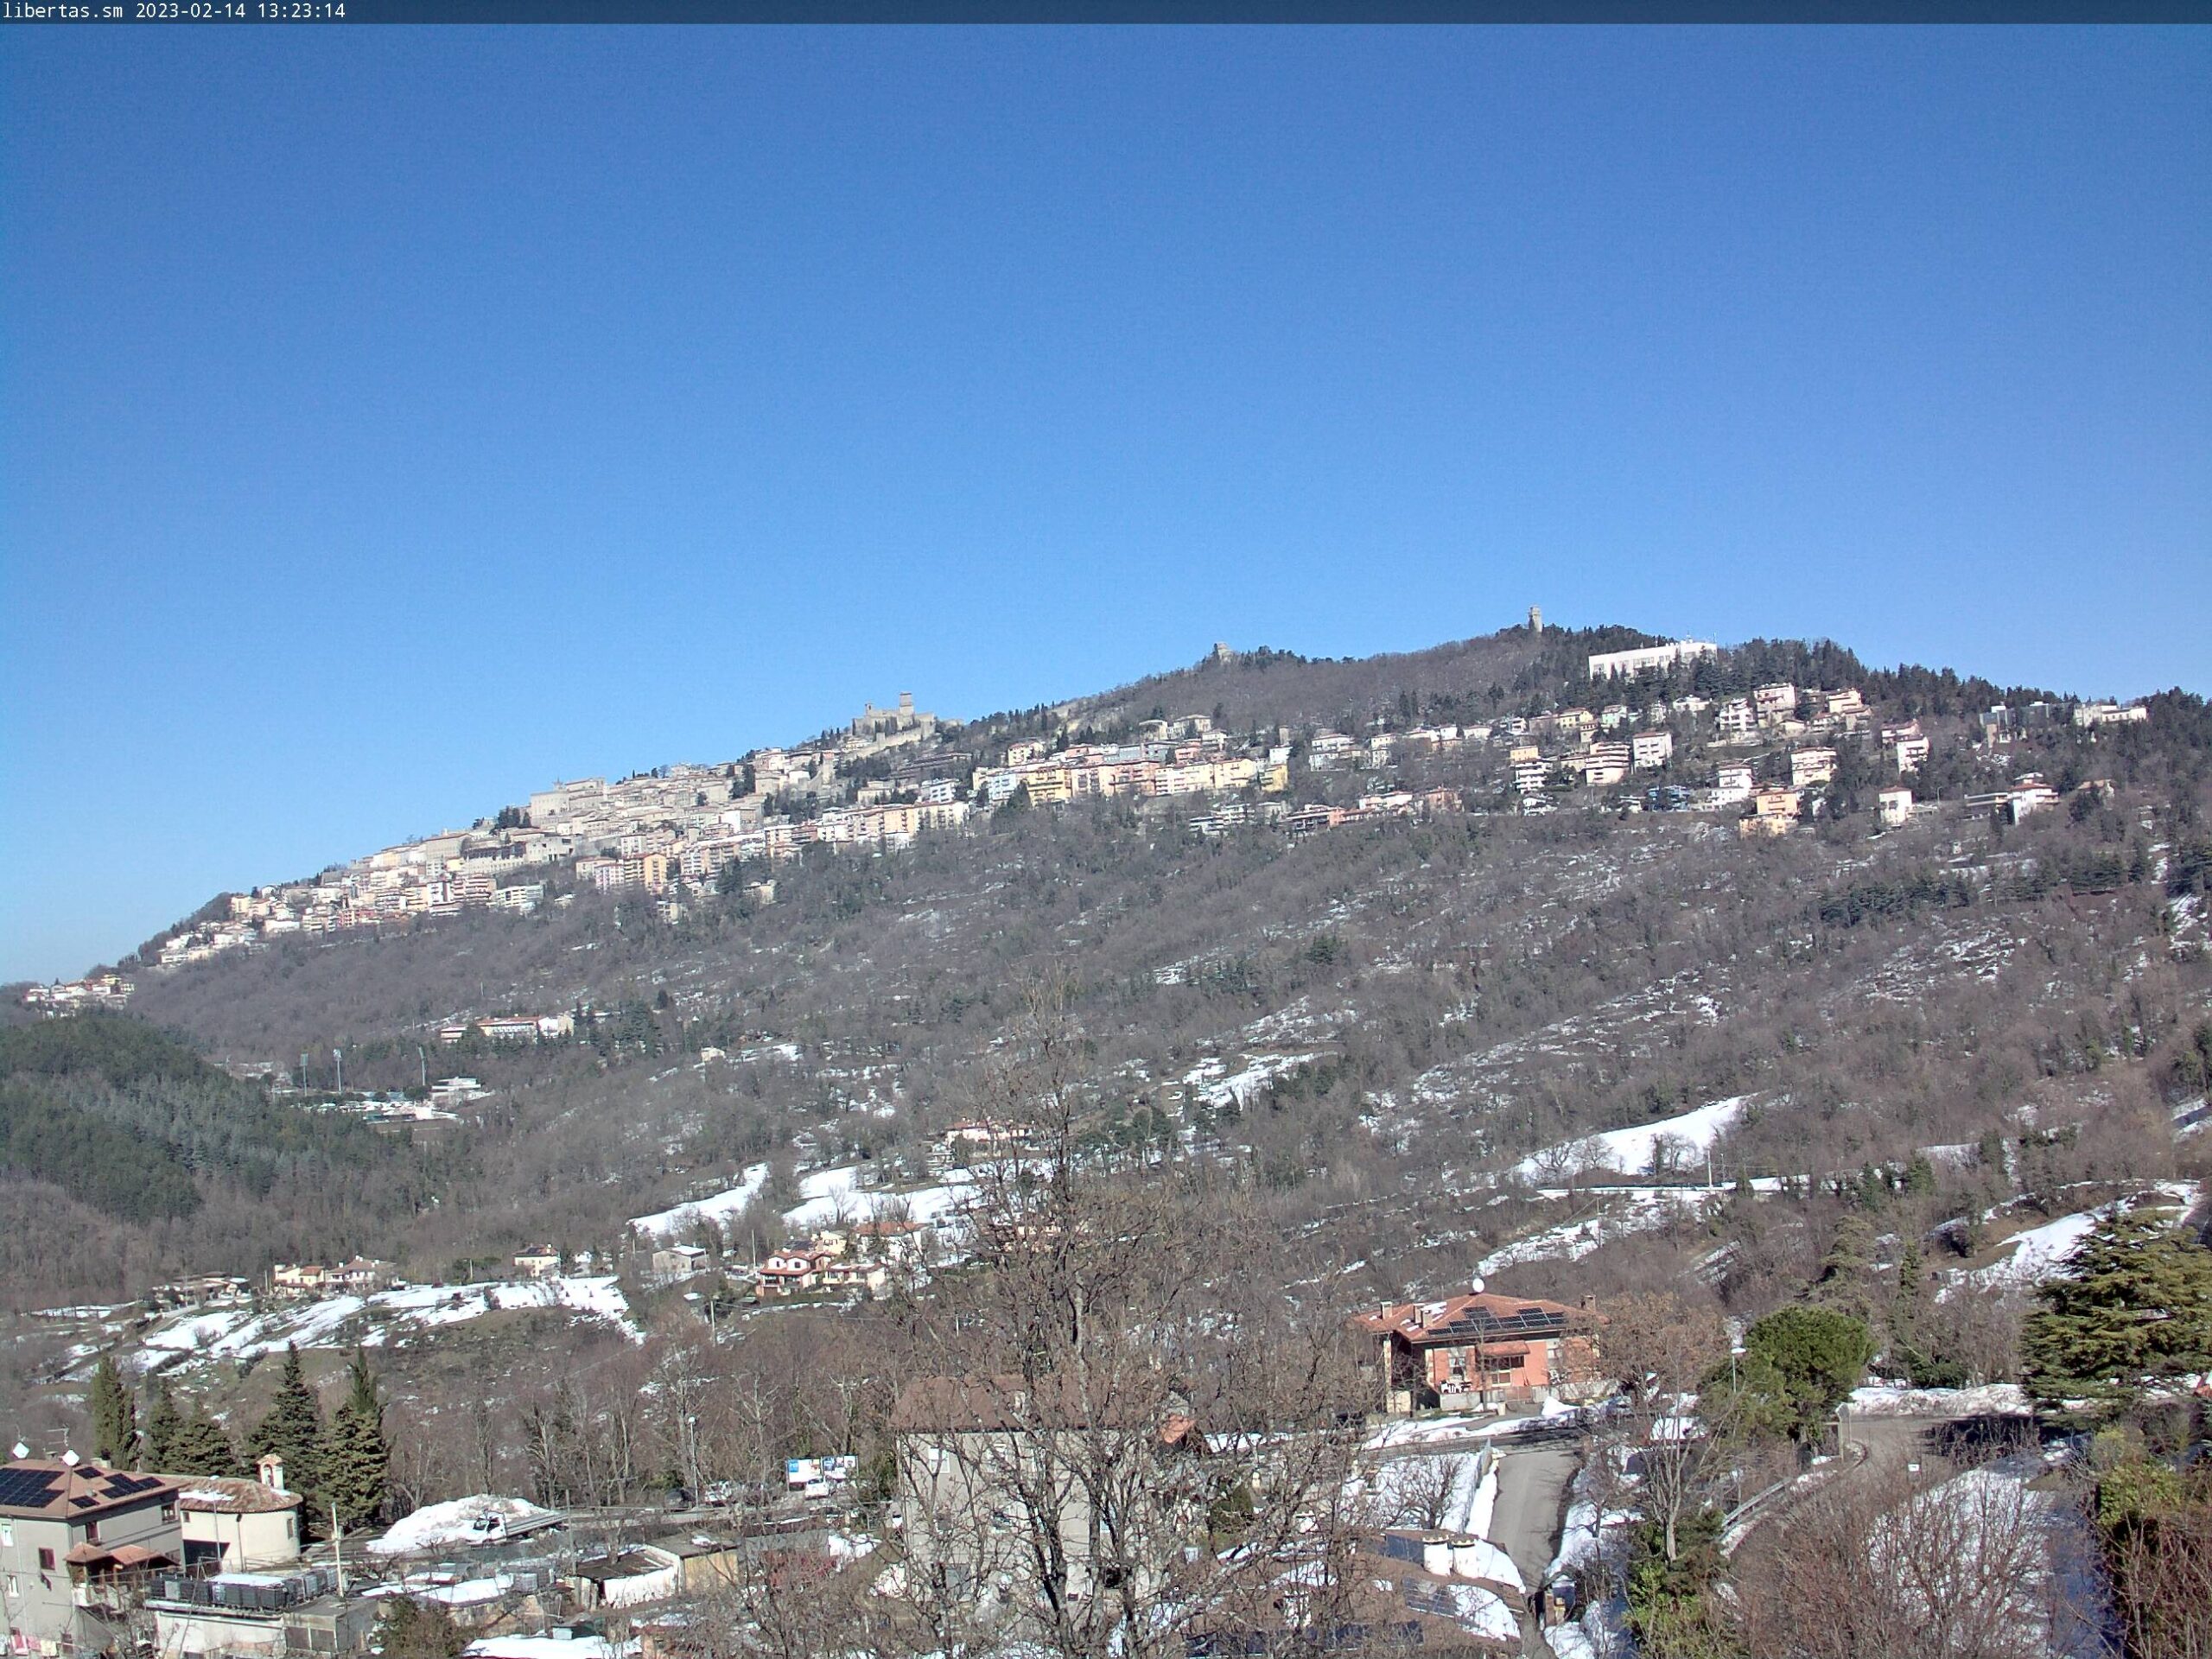 San Marino. Meteo: anticiclone almeno fino a sabato, poi arriva un po’ di nuvolosità. Temperatura sopra la media